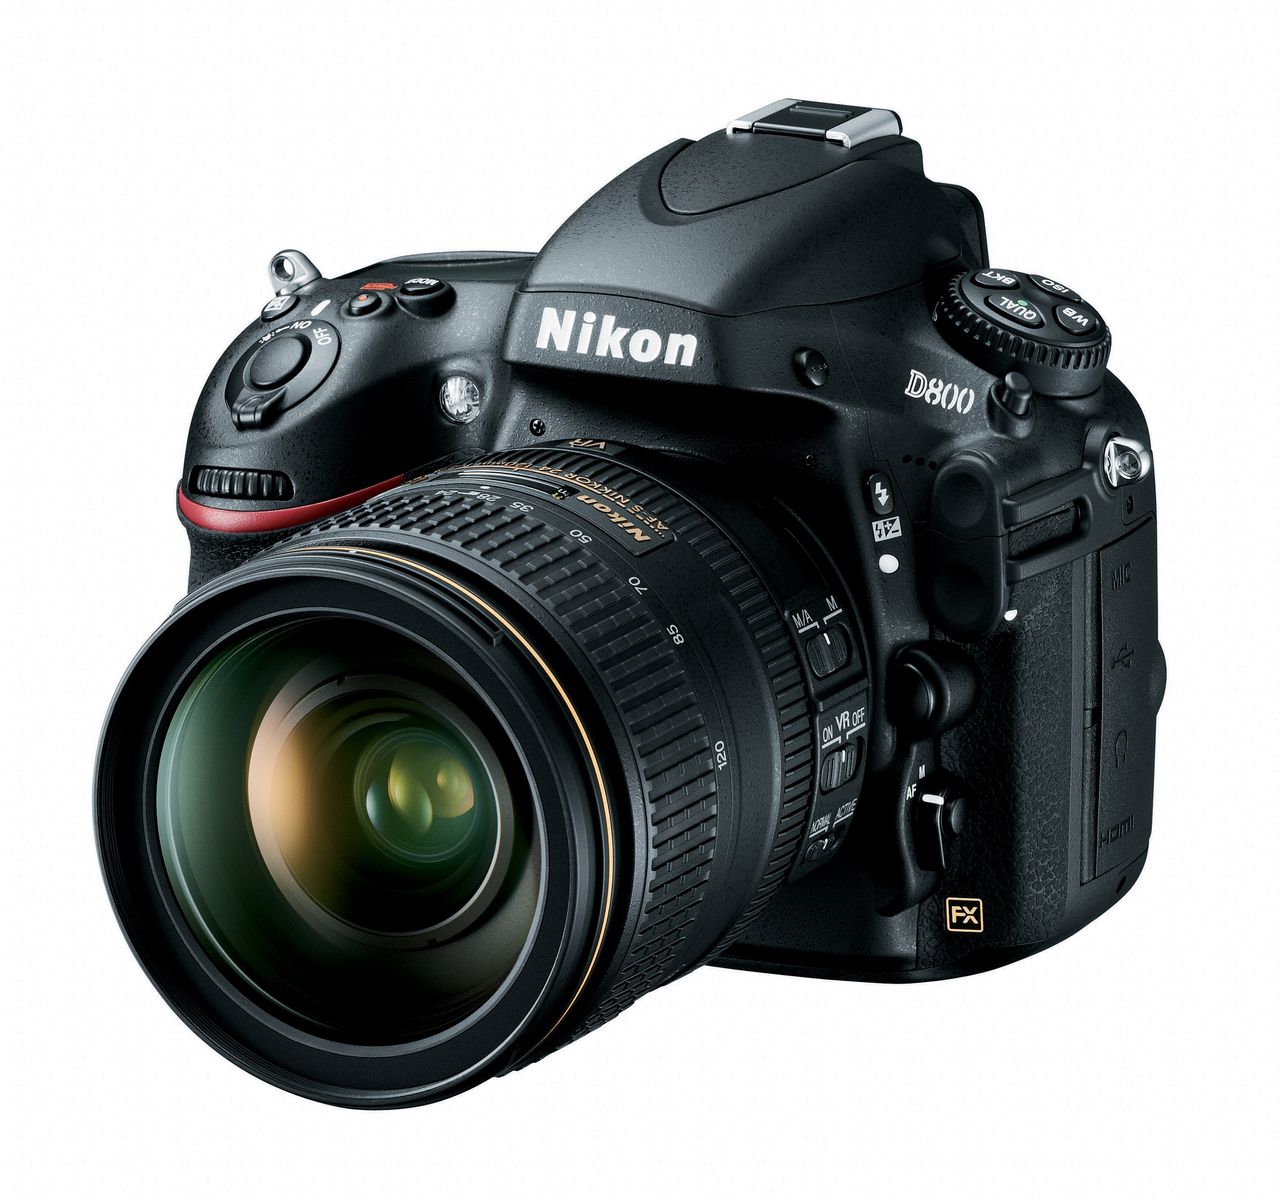 Aparat Nikon D800 umożliwia obsługę bezprzewodową dzięki opcjonalnemu wyposażeniu w postaci przekaźnika WT-4